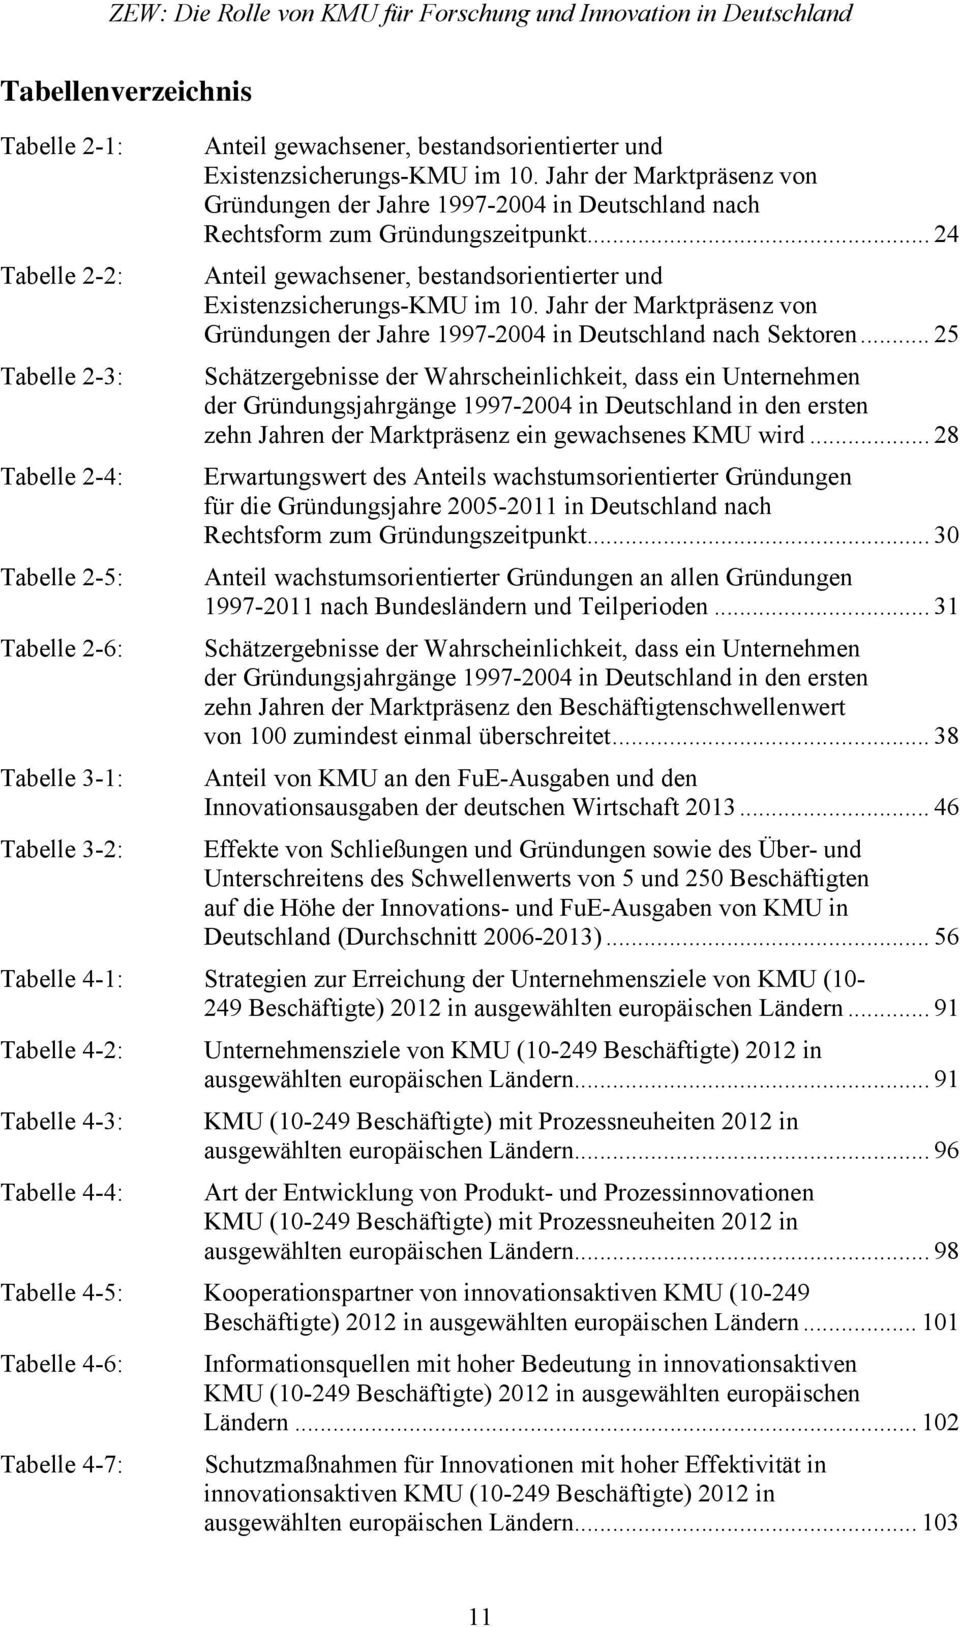 .. 24 Tabelle 2-2: Anteil gewachsener, bestandsorientierter und Existenzsicherungs-KMU im 10. Jahr der Marktpräsenz von Gründungen der Jahre 1997-2004 in Deutschland nach Sektoren.